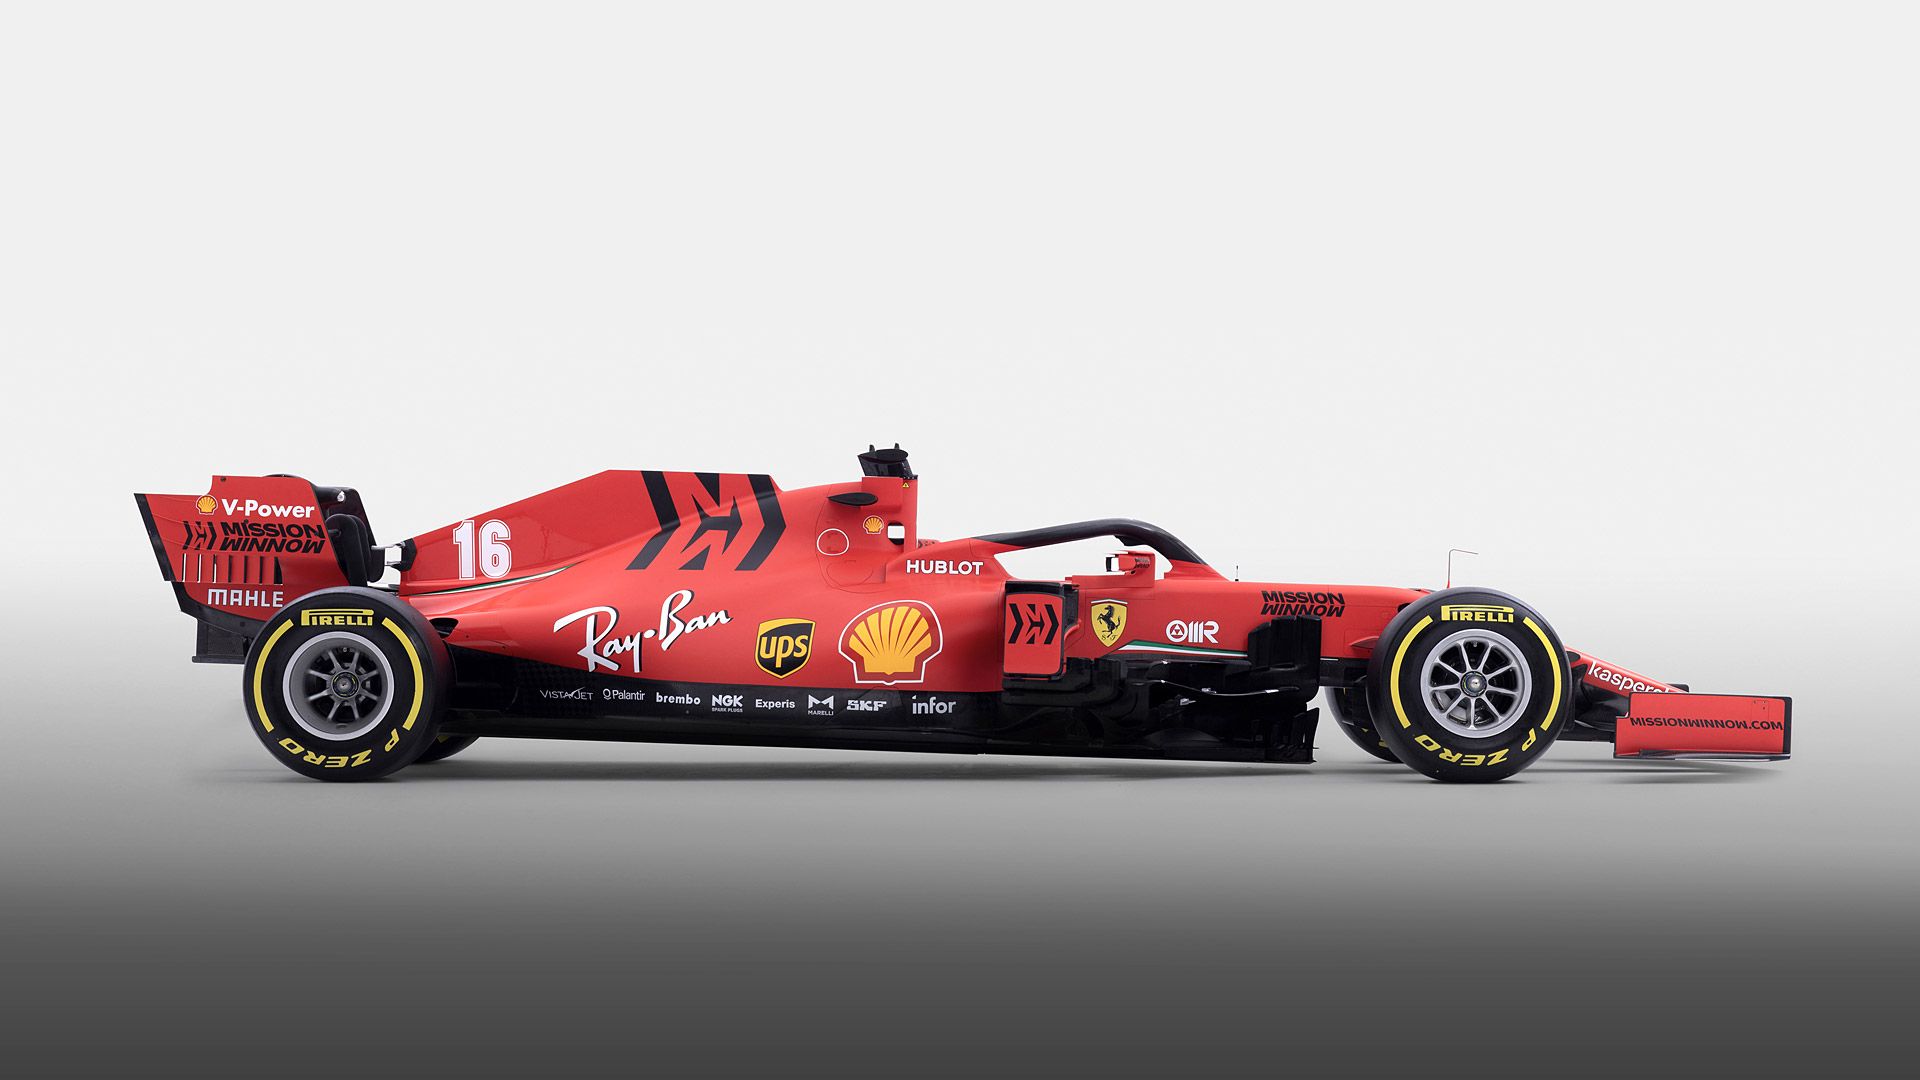 Ferrari Sf1000 Wallpapers